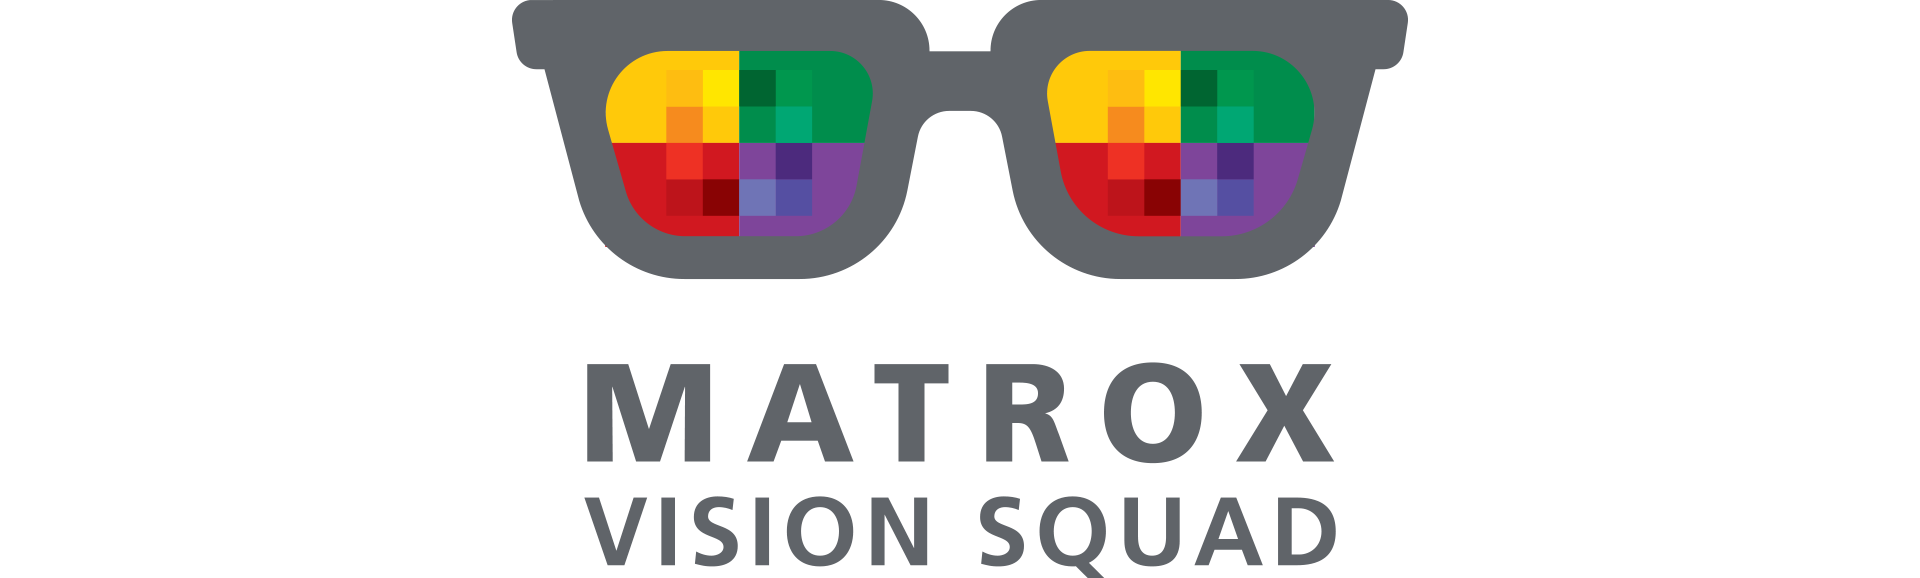 Matrox Vision Squad